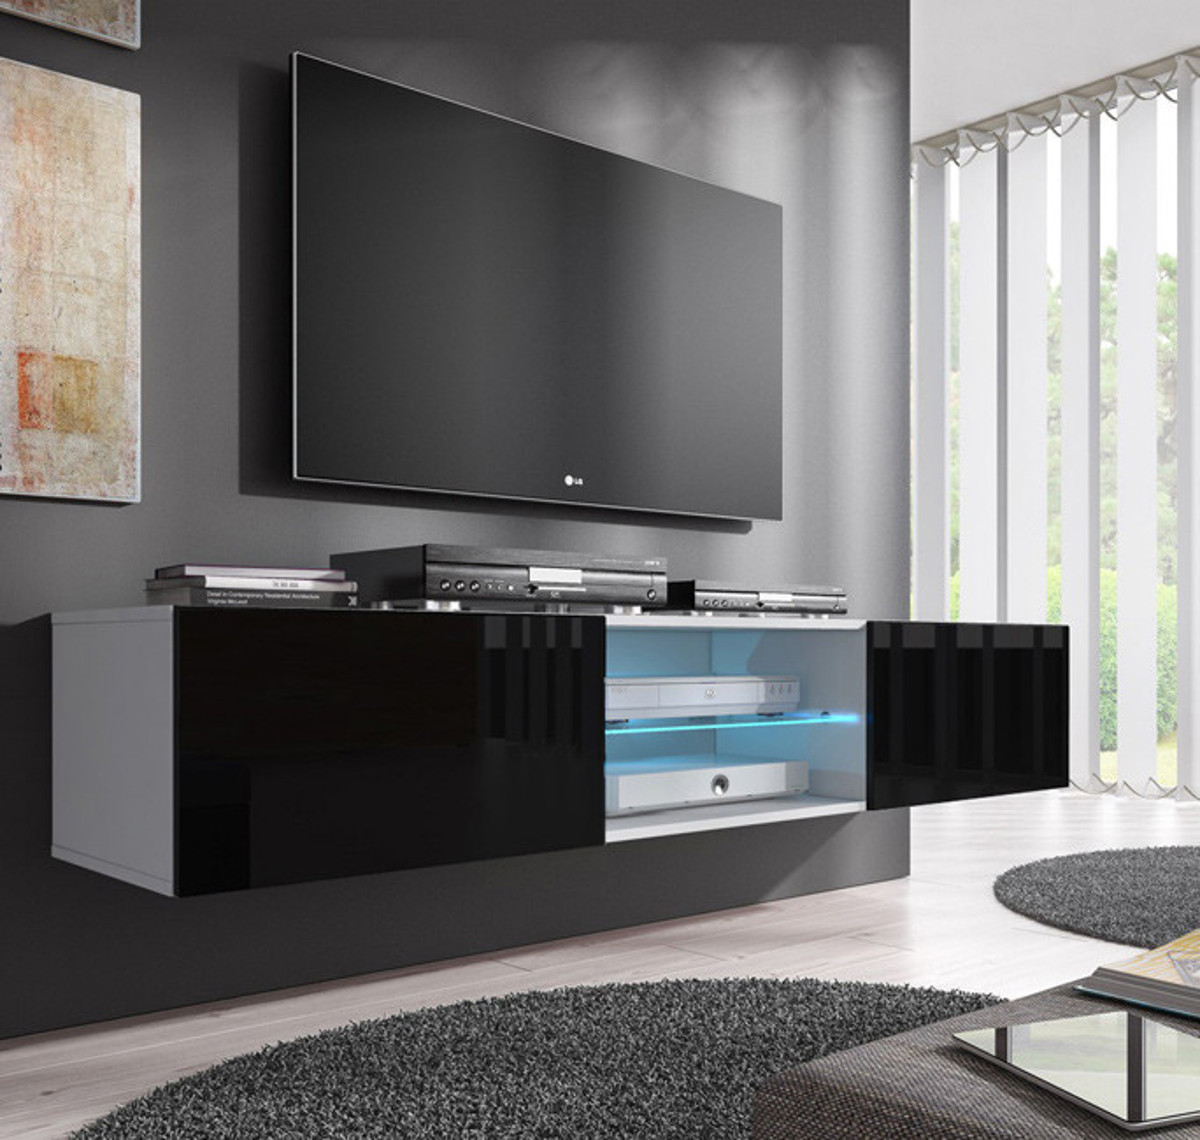 Imagen de Mueble TV modelo Tenon (160 cm) en blanco y negro